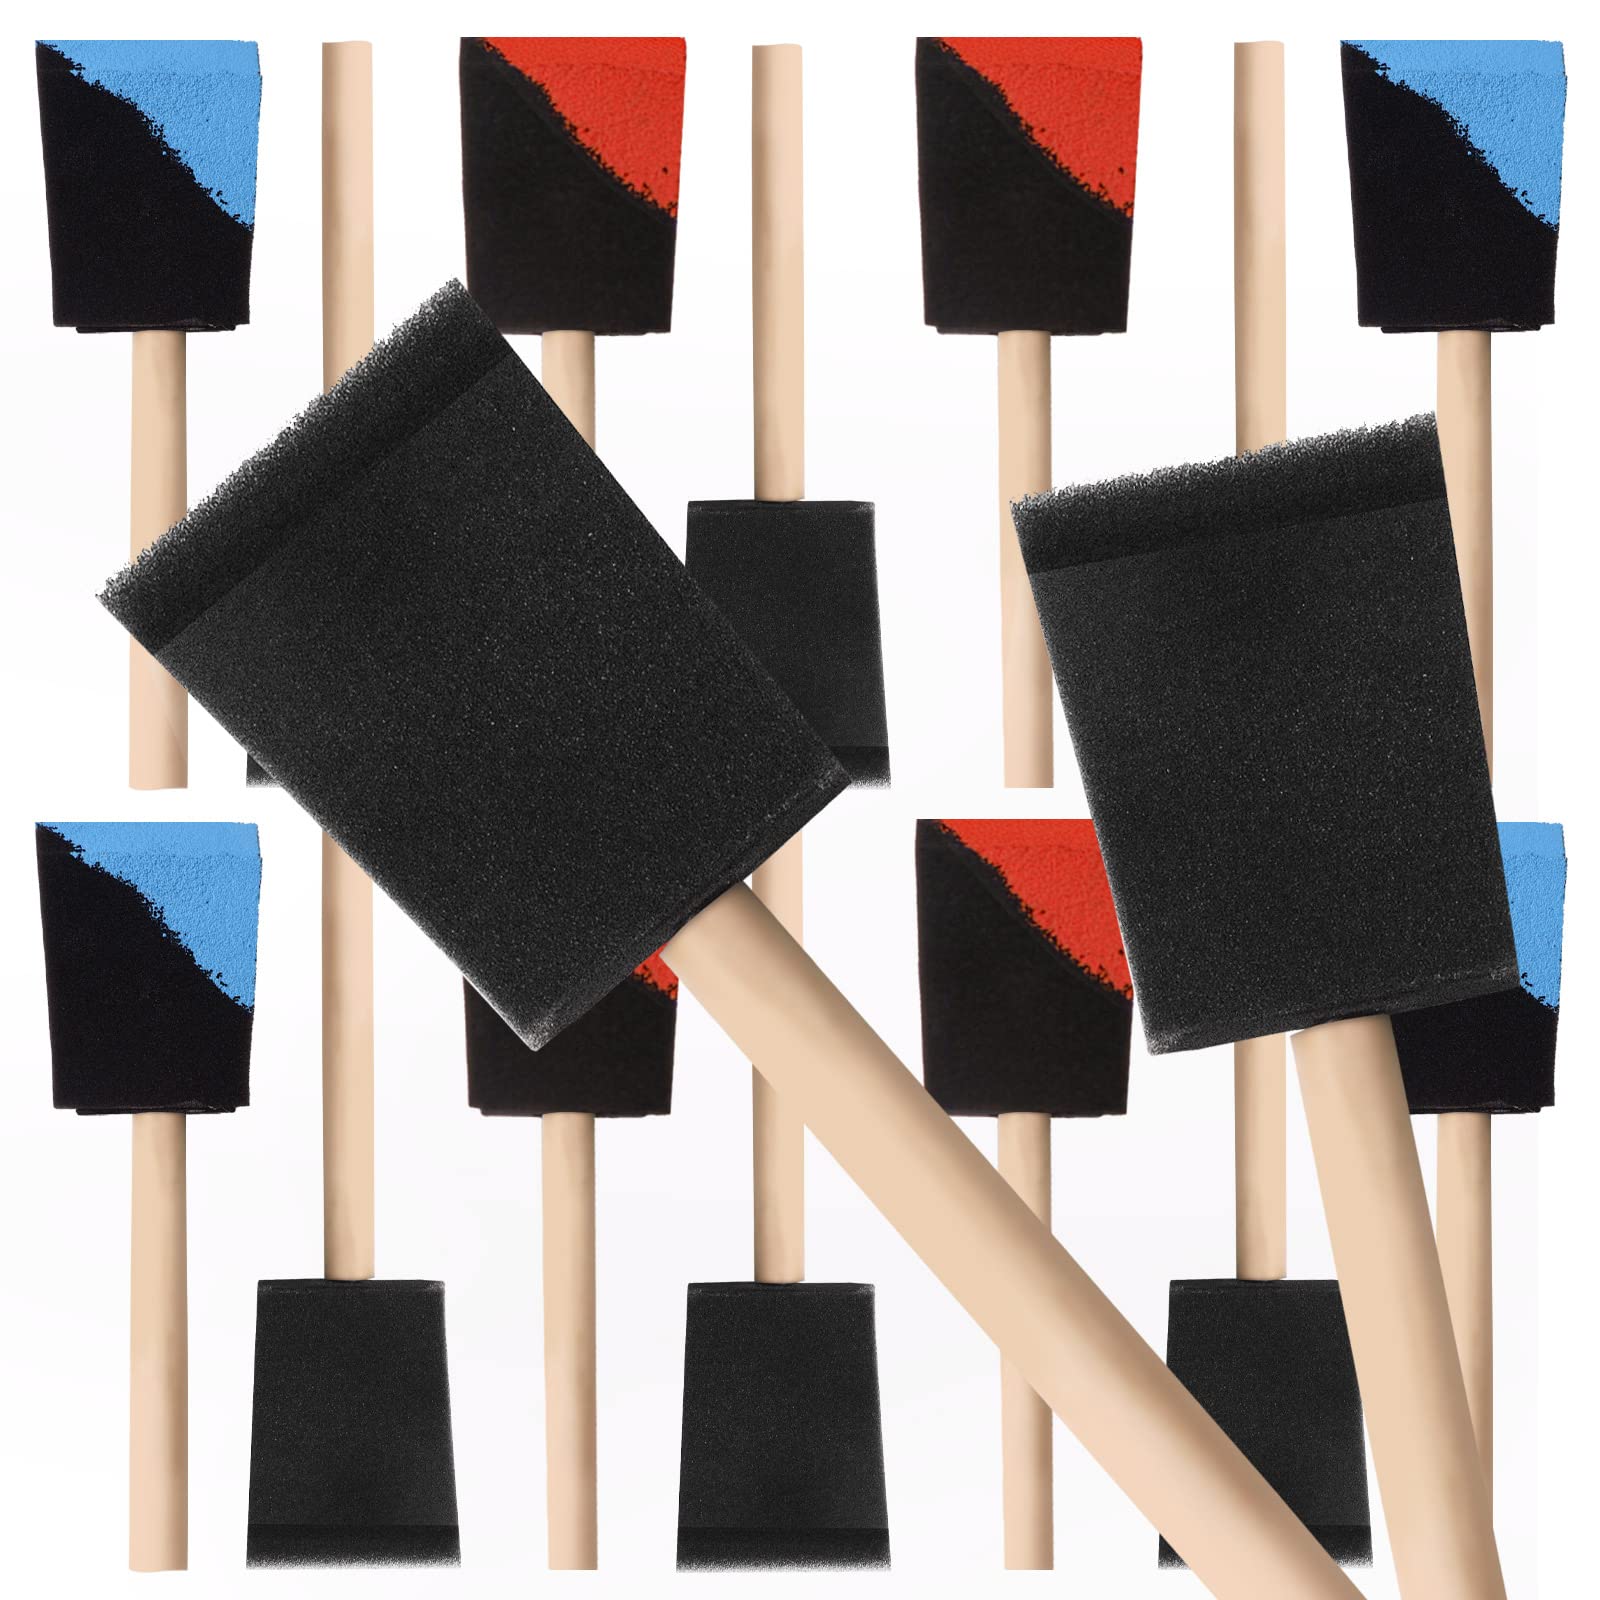 YiBaiBrush-Foam Paint Brushes, 2 Inch Sponge Brushes 20 Pack